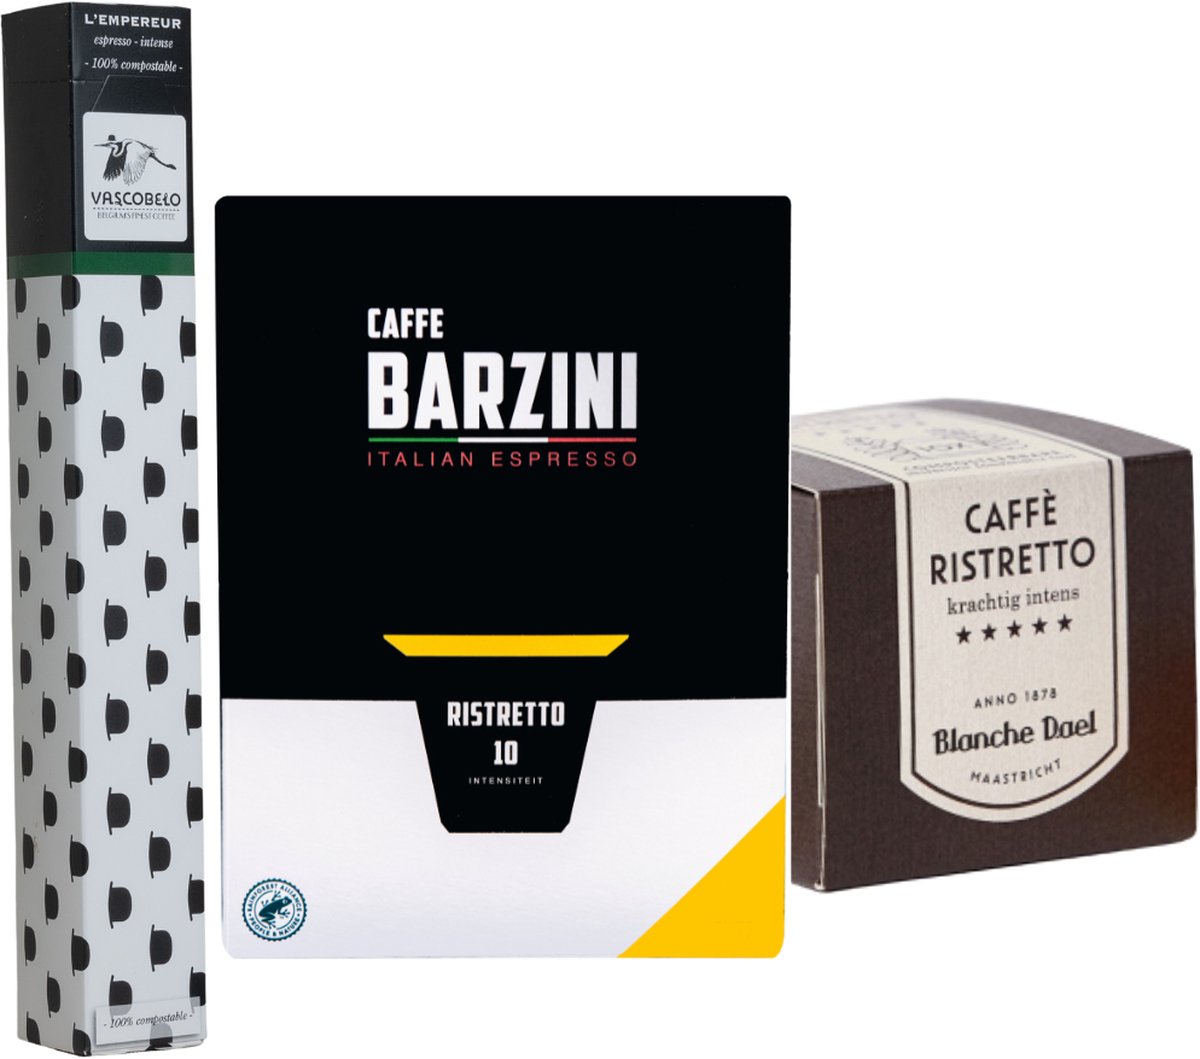 Koffiecups proefpakket Ristretto | 100 Cups, Barzini, Vascobelo & Blanche Dael koffie cups geschikt voor Nespresso apparaten